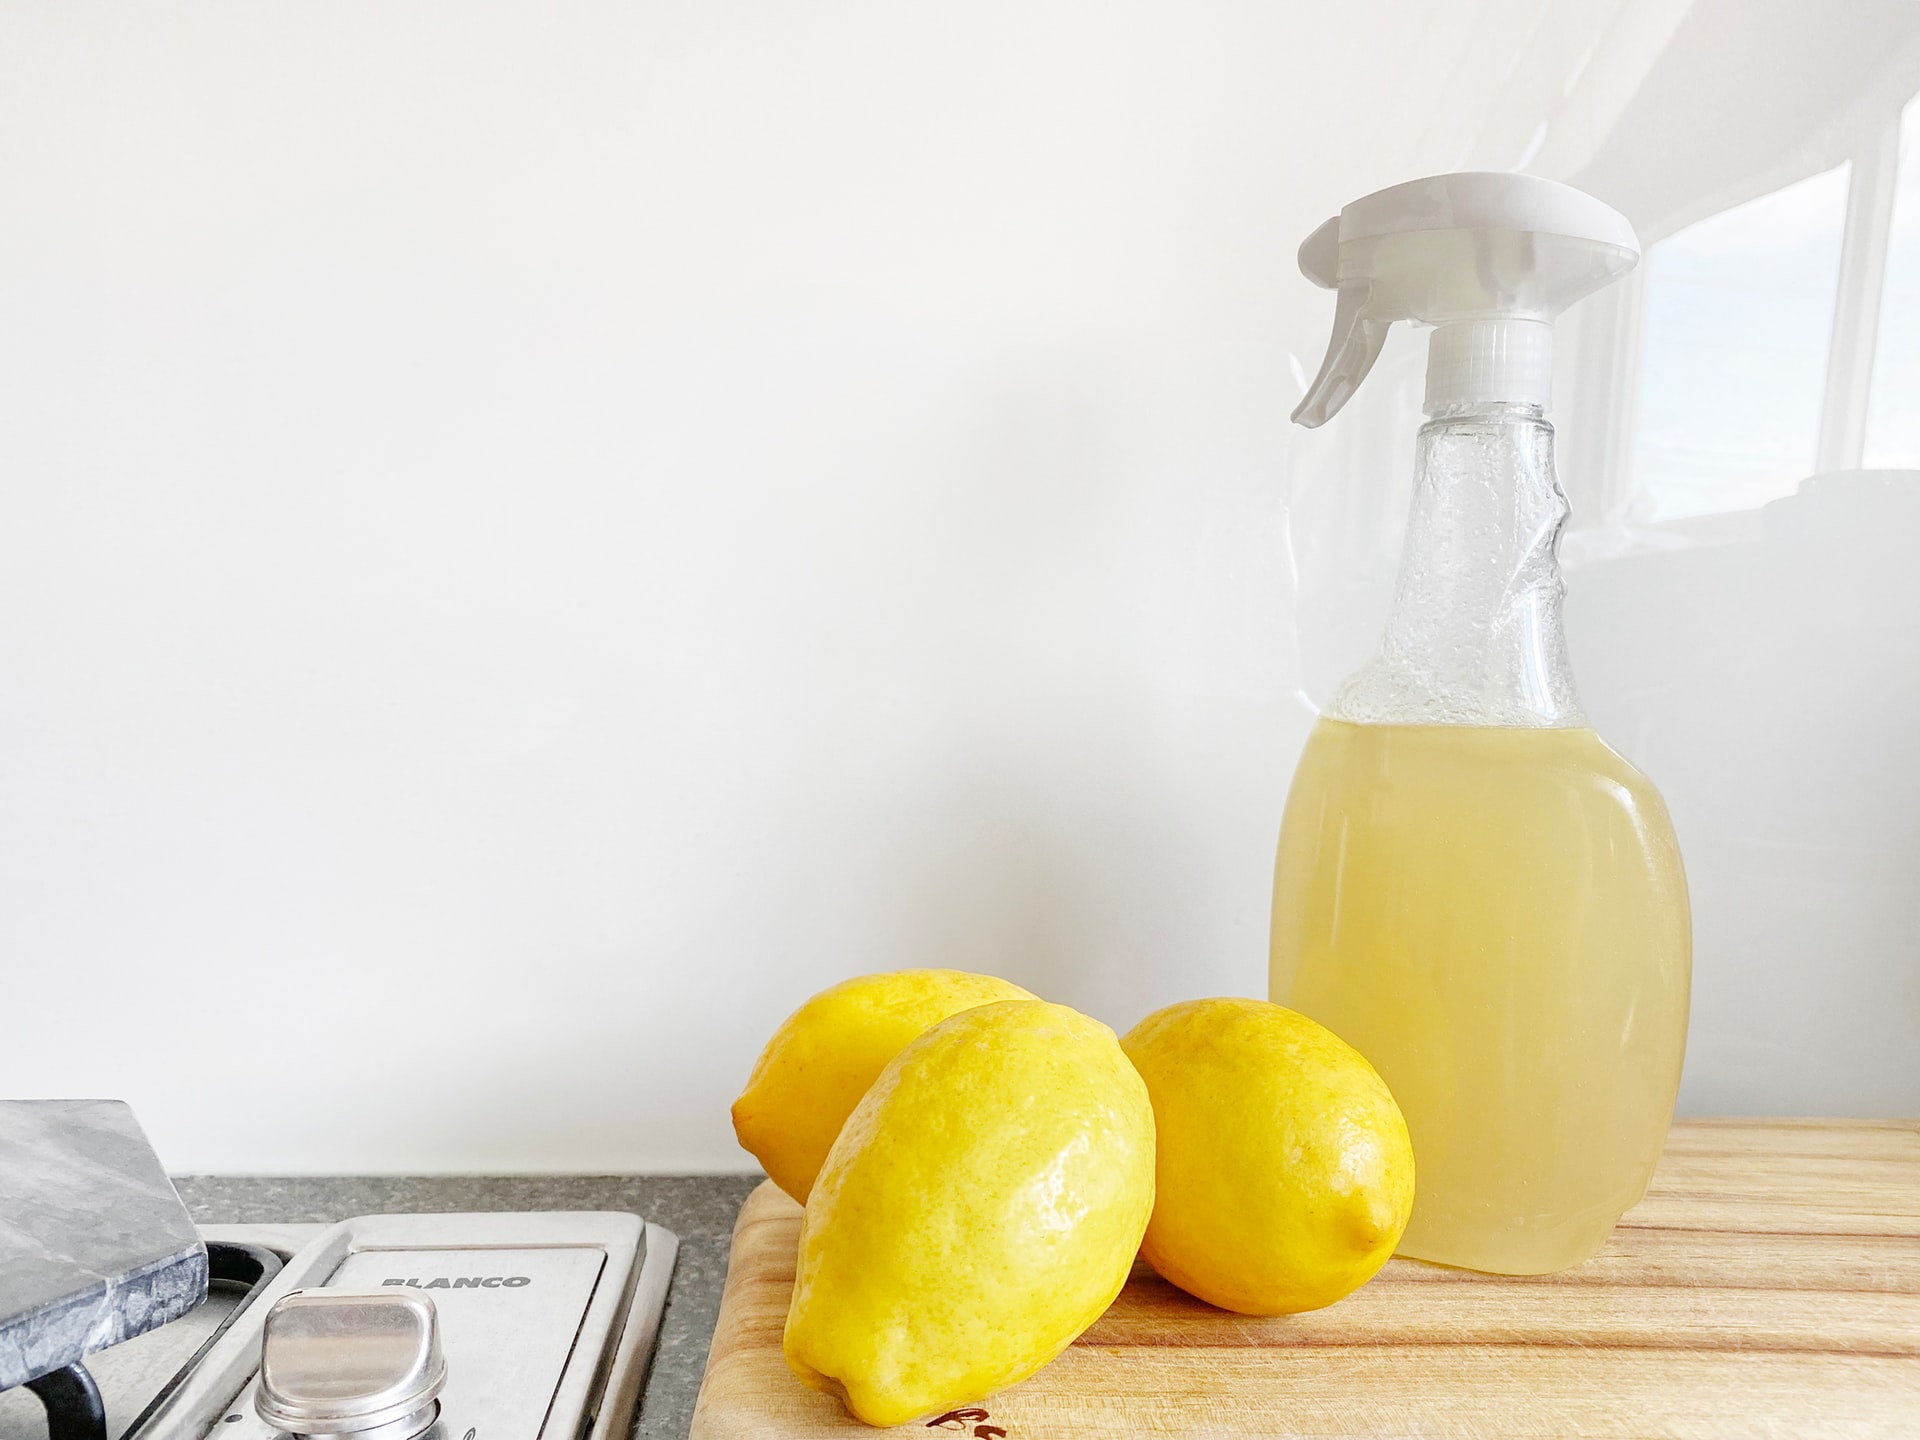 Homemade lemon and vinegar cleaning solution